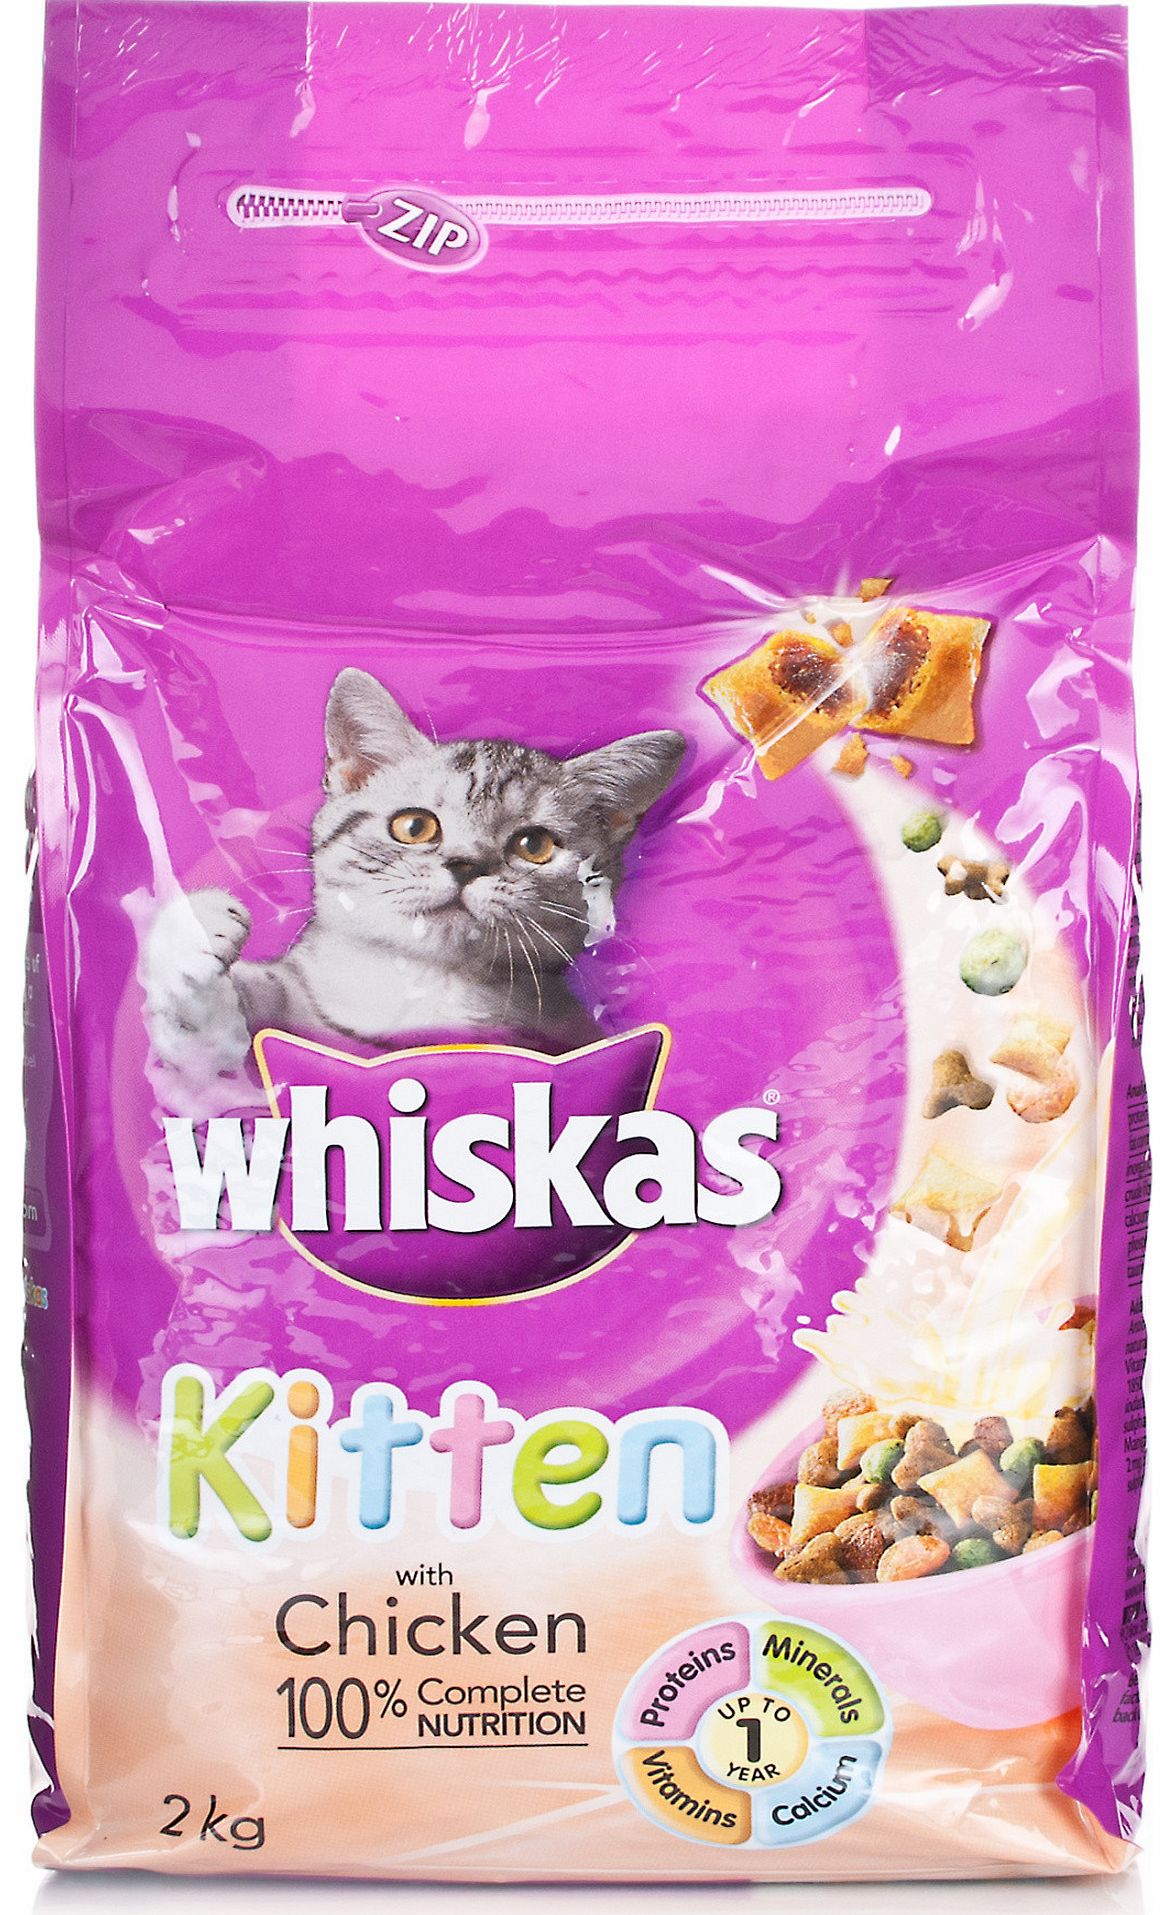 Whiskas Complete Kitten Chicken